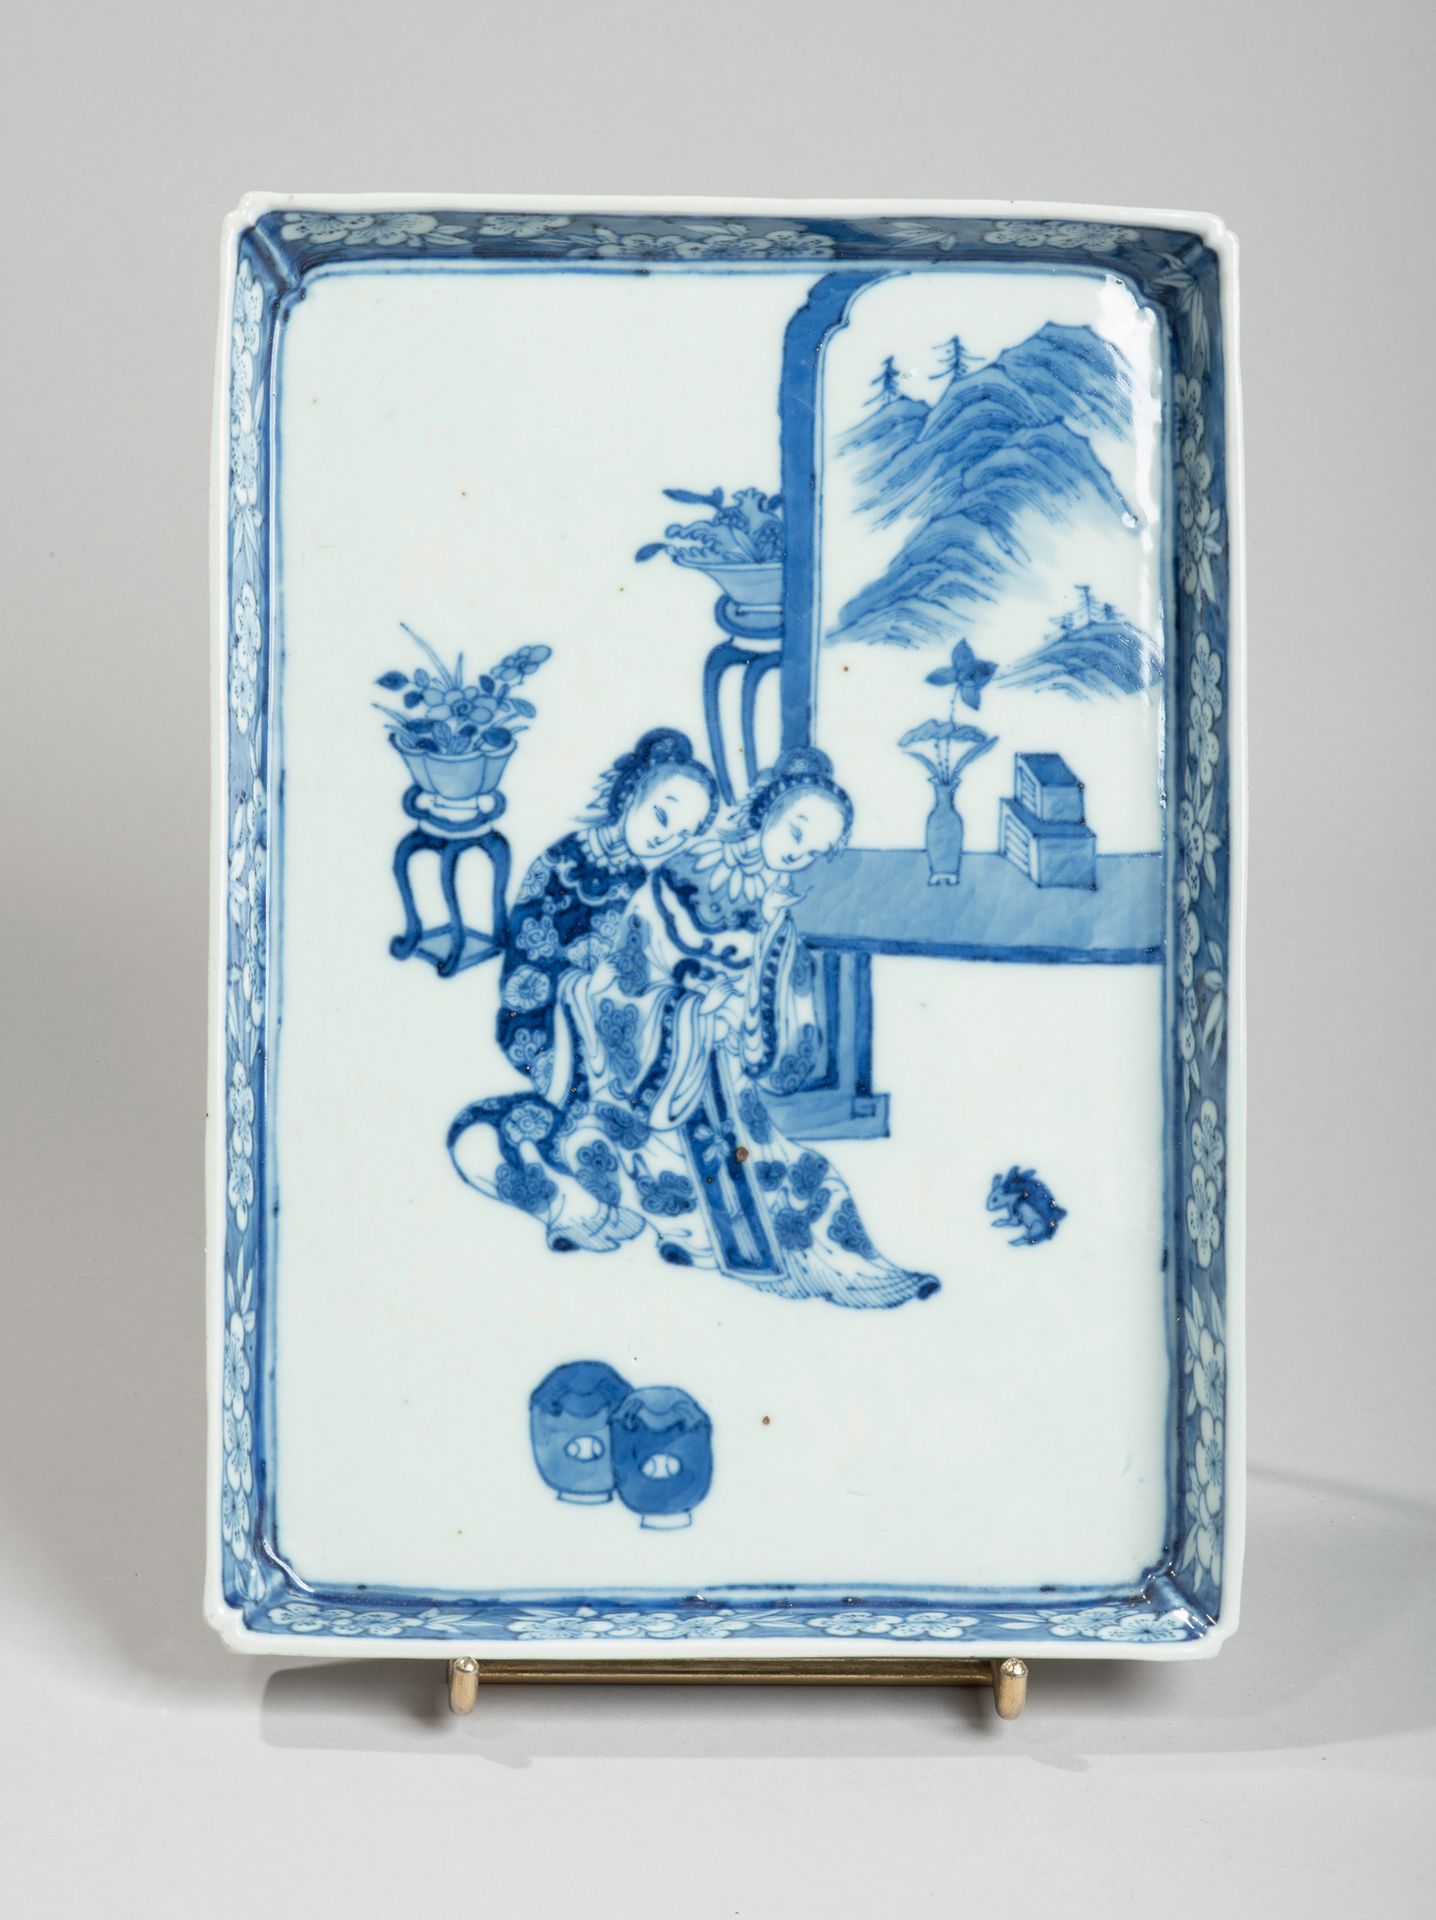 VIETNAM, Hue - XIXe siècle 
长方形瓷盘，釉下蓝色装饰，两个年轻女子在屏风旁看兔子，边框有花。
Dim. 25,5 x 18 cm.